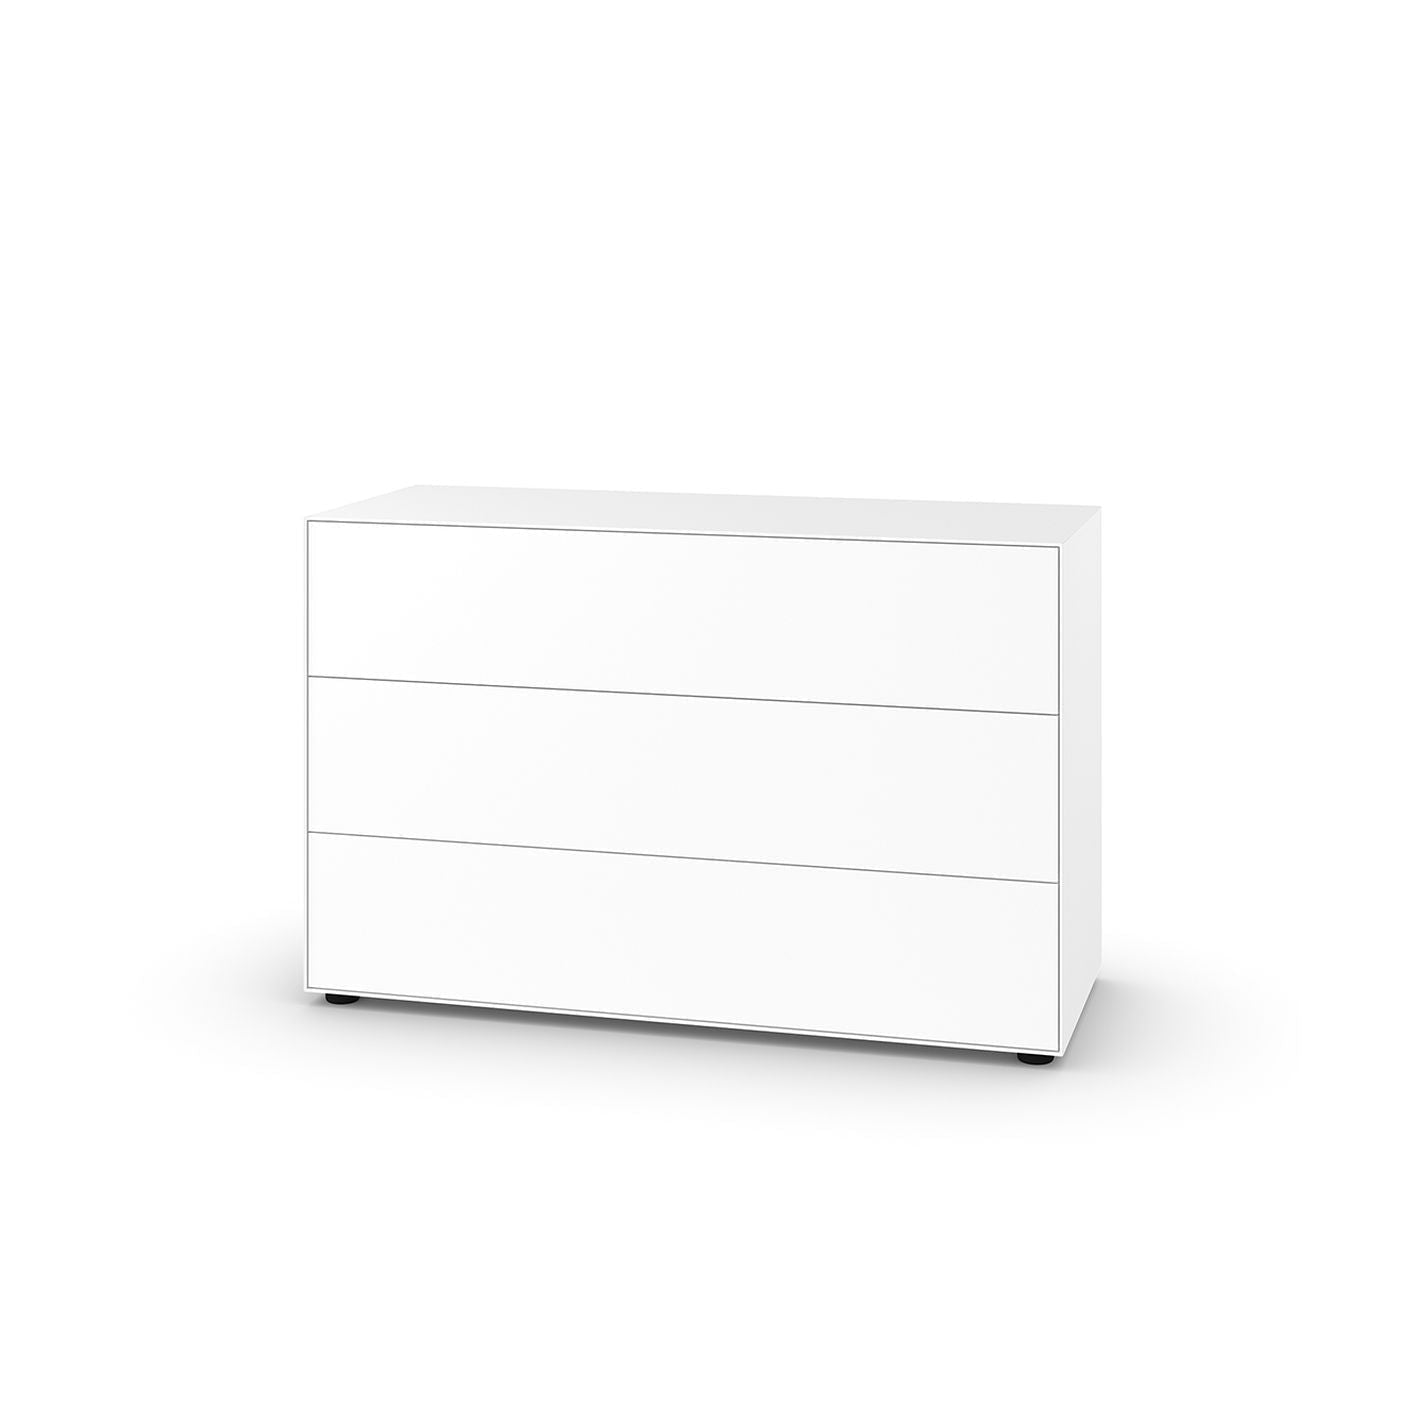 PIURE NEX PUR BOX HX W 75x120 cm, 3 cassetti, bianco